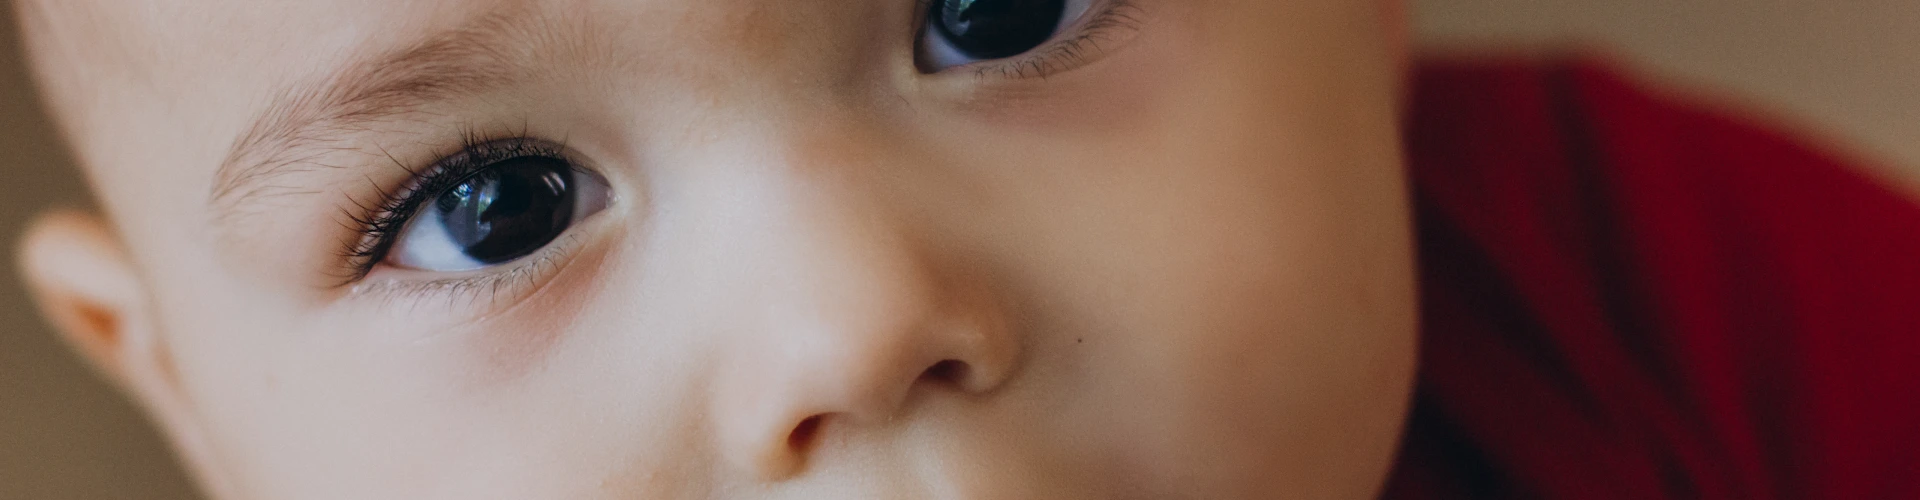 Bebeklerde Kontakt Dermatit Neden Olur?